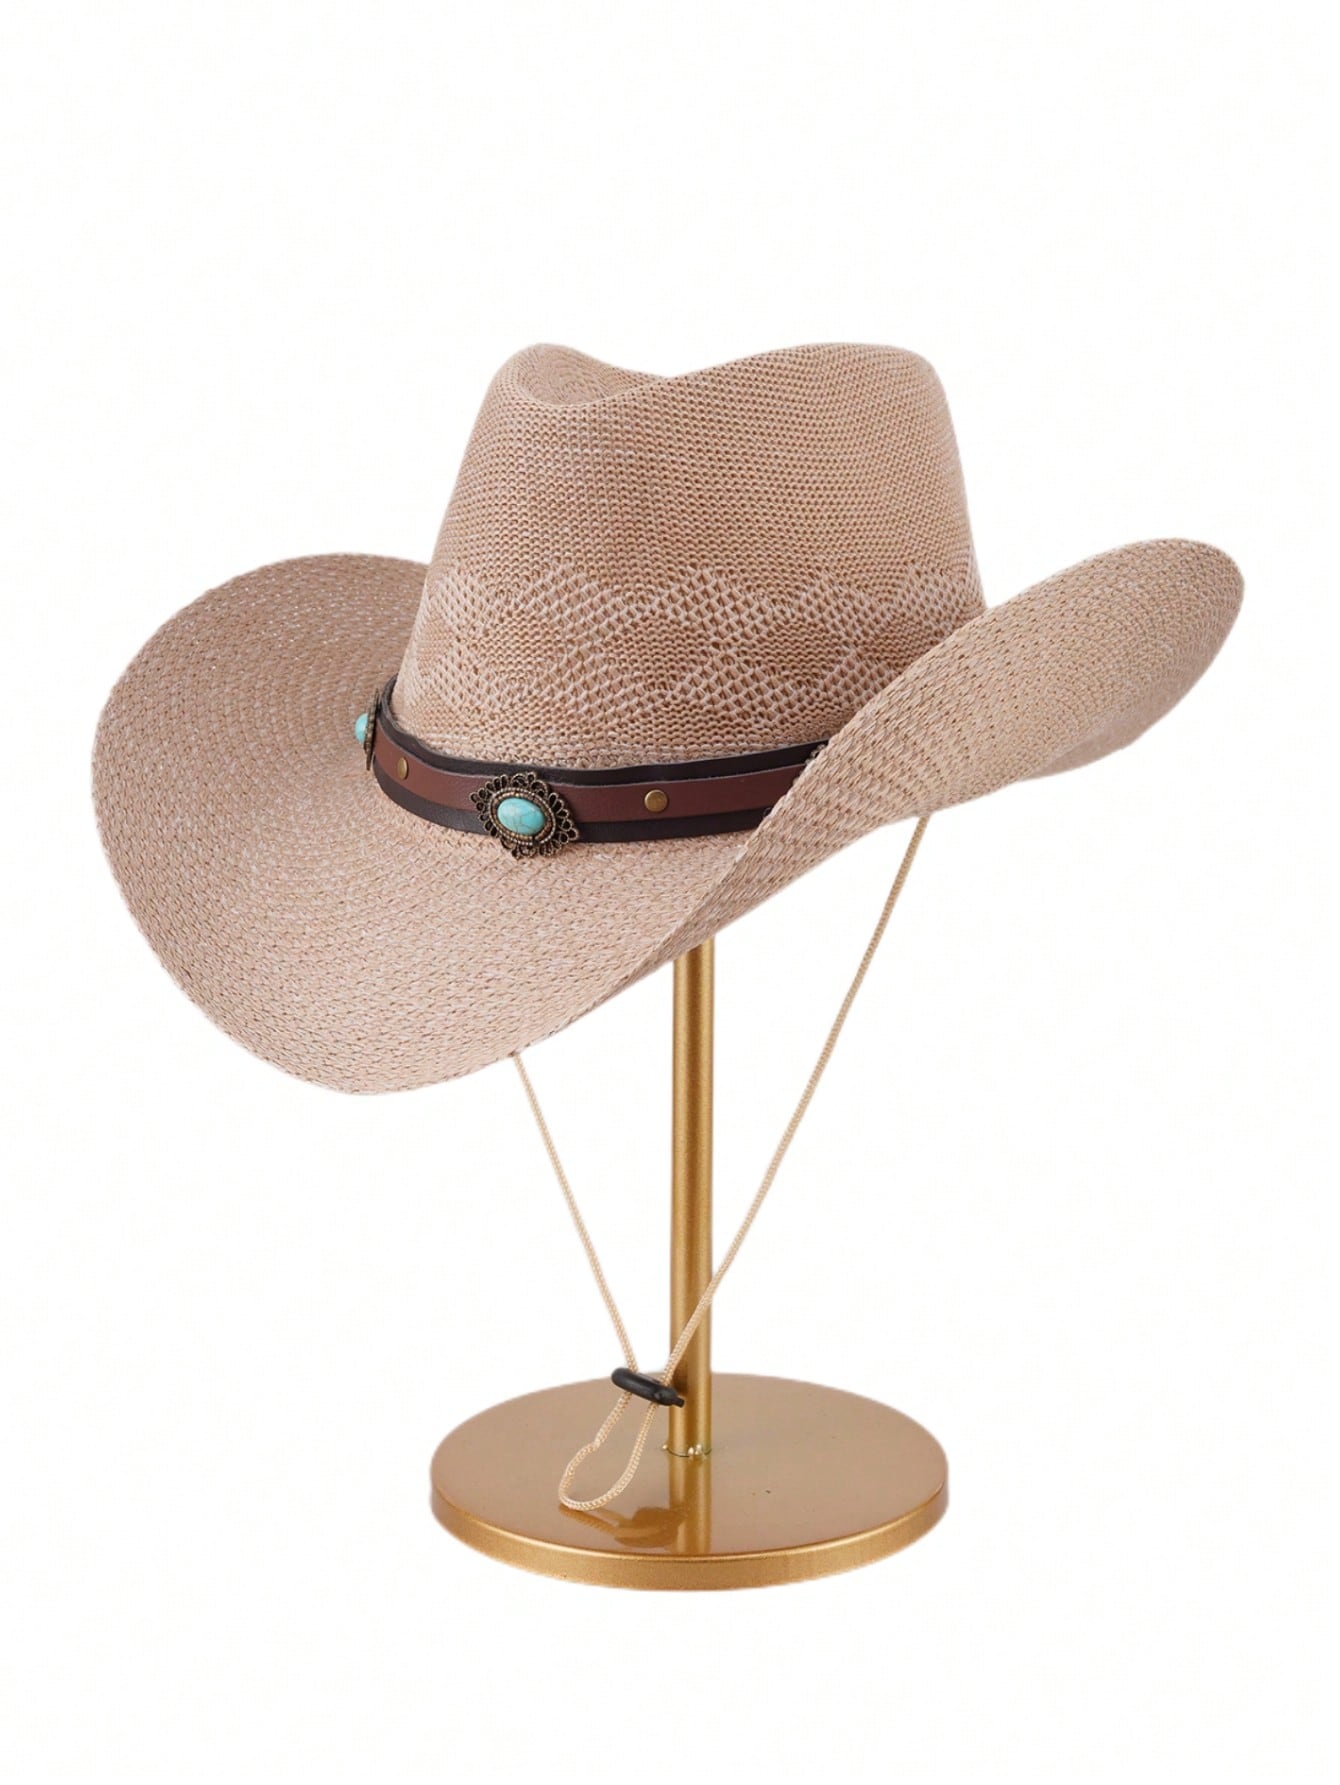 1 шт. джинсовая шляпа от солнца, хаки удобная солнцезащитная шляпа ветрозащитная сетчатая летняя спортивная шапка шарф с повязкой на голову бейсболка велосипедная шапочка